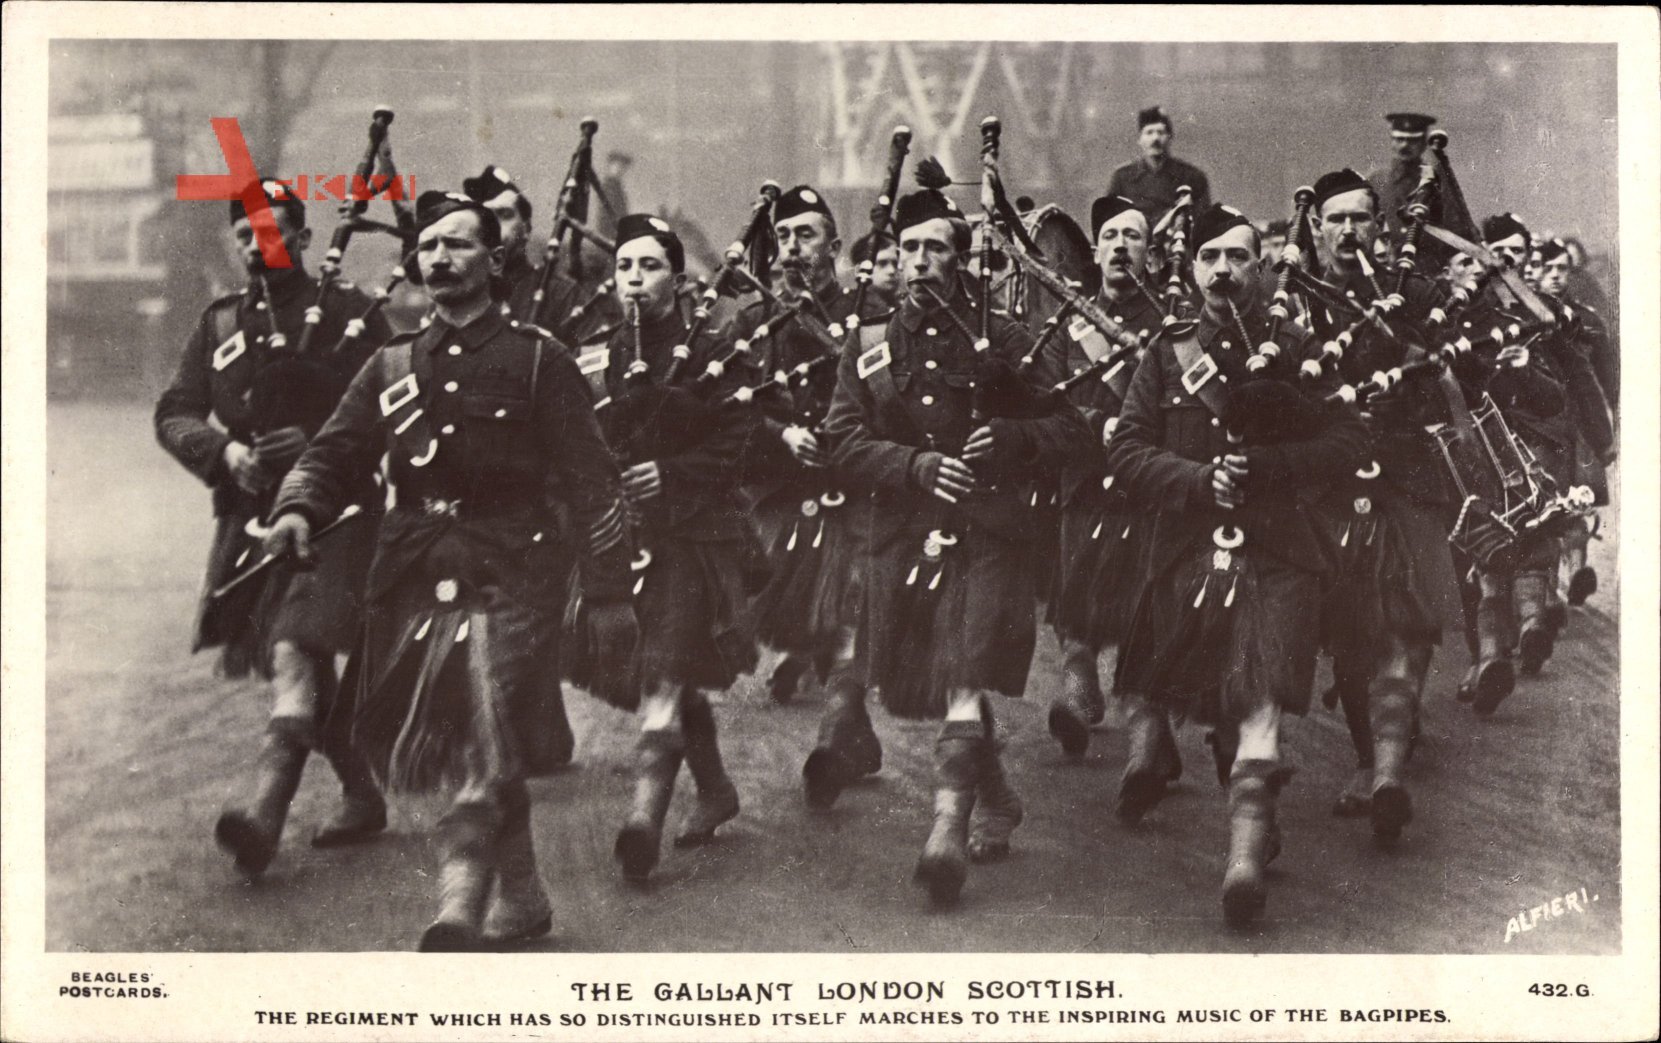 Schottland, The Gallant London Scottish, Regiment, Dudelsäcke, Schotten